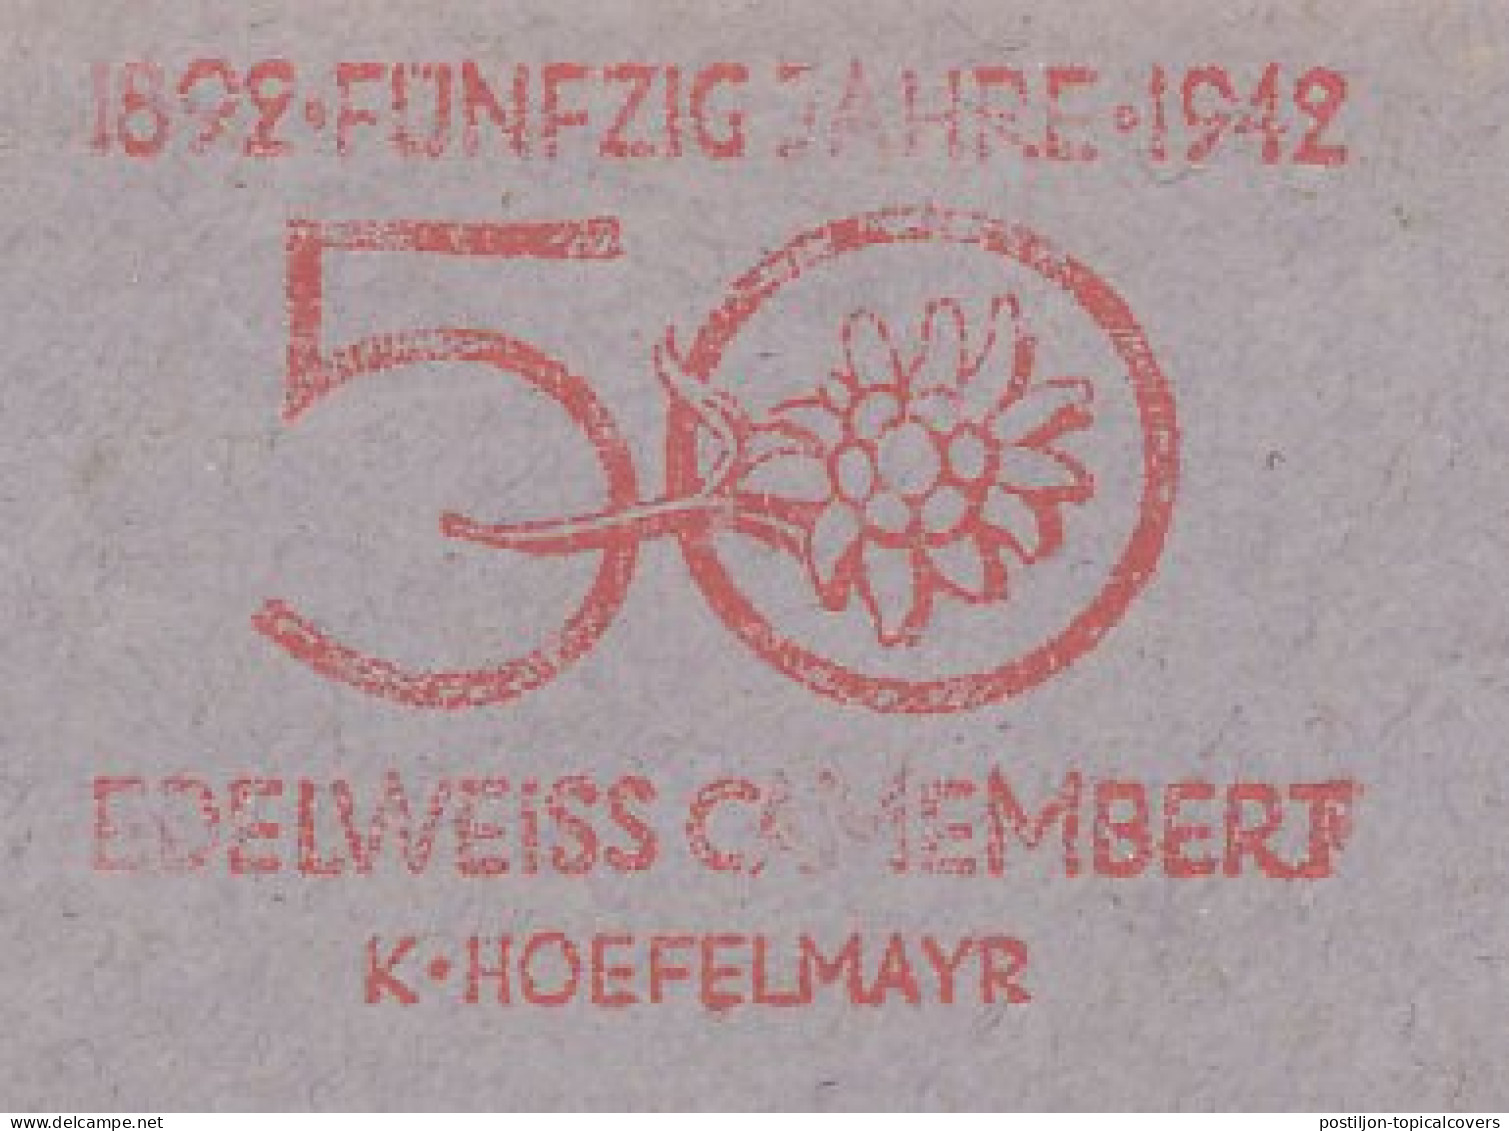 Meter Cut Deutsche Post / Germany 1949 Edelweiss Camembert - Cheese - Levensmiddelen